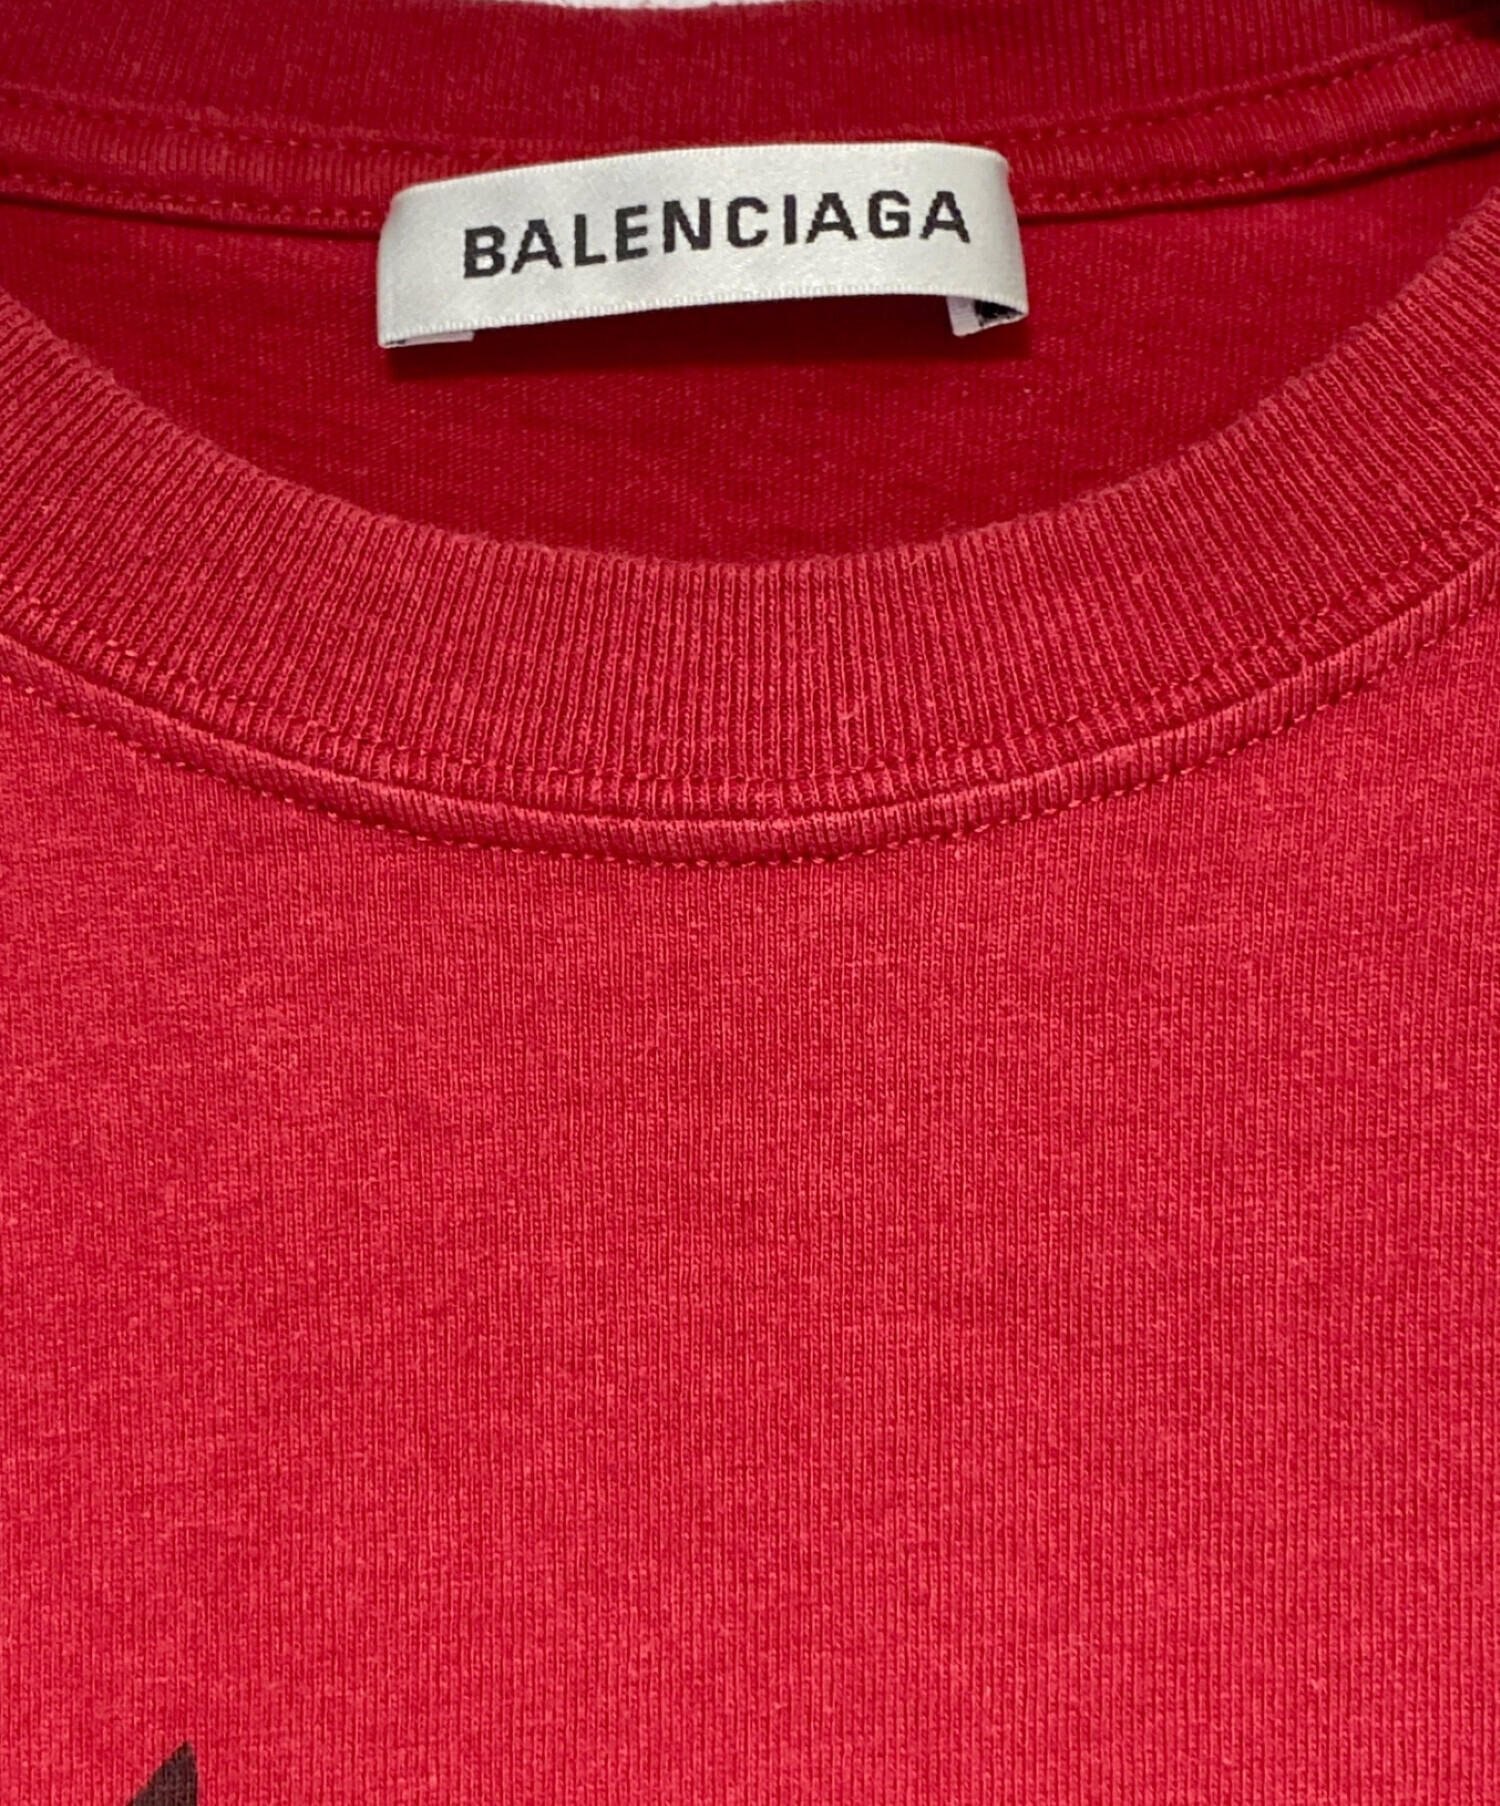 BALENCIAGA (バレンシアガ) BBロゴTシャツ レッド サイズ:XS